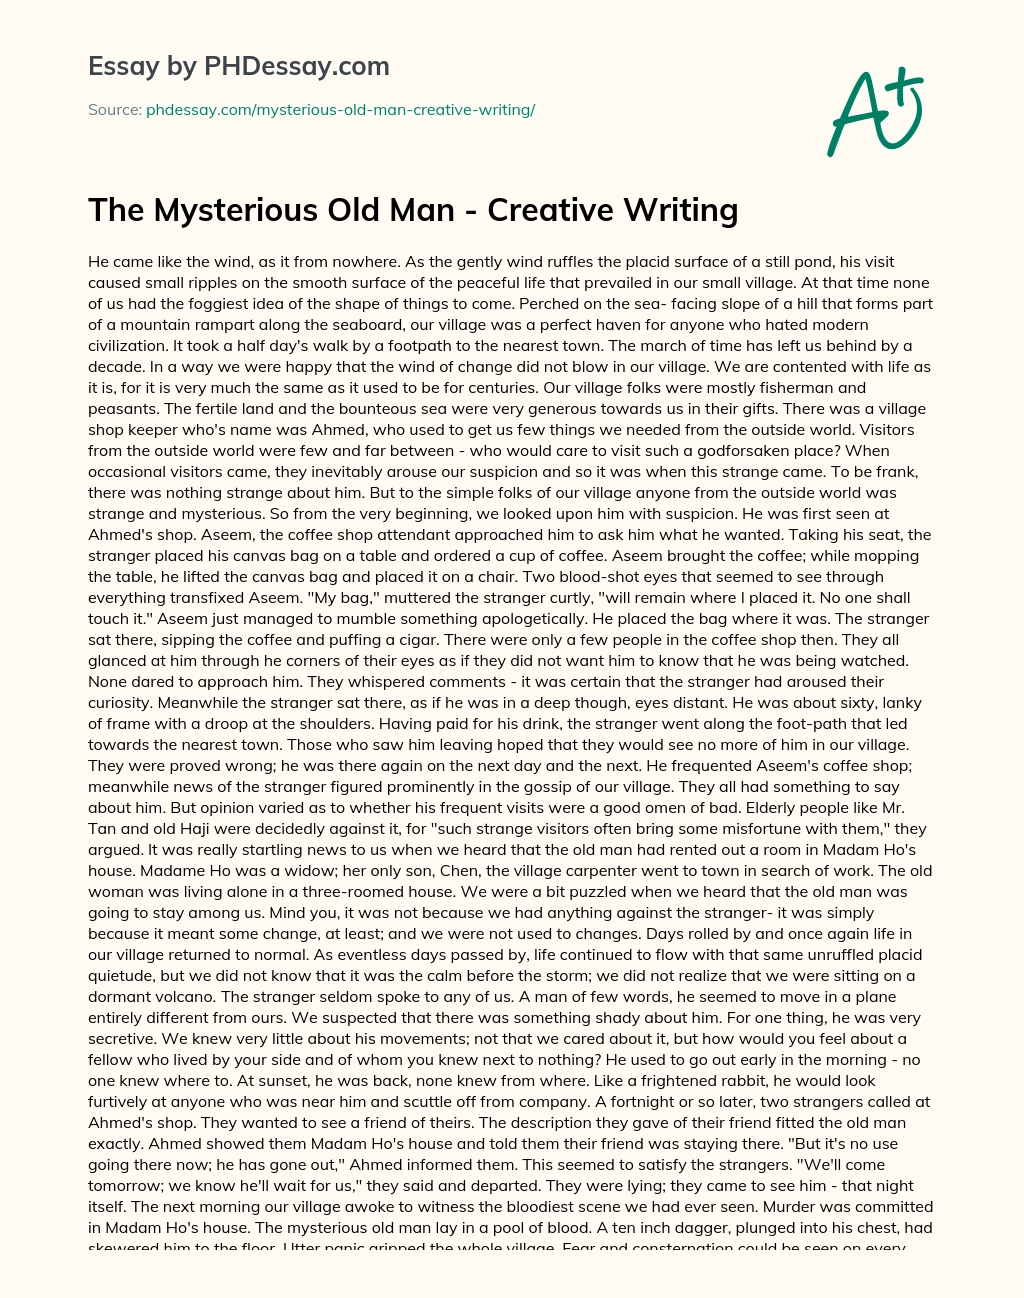 creative writing describing old man